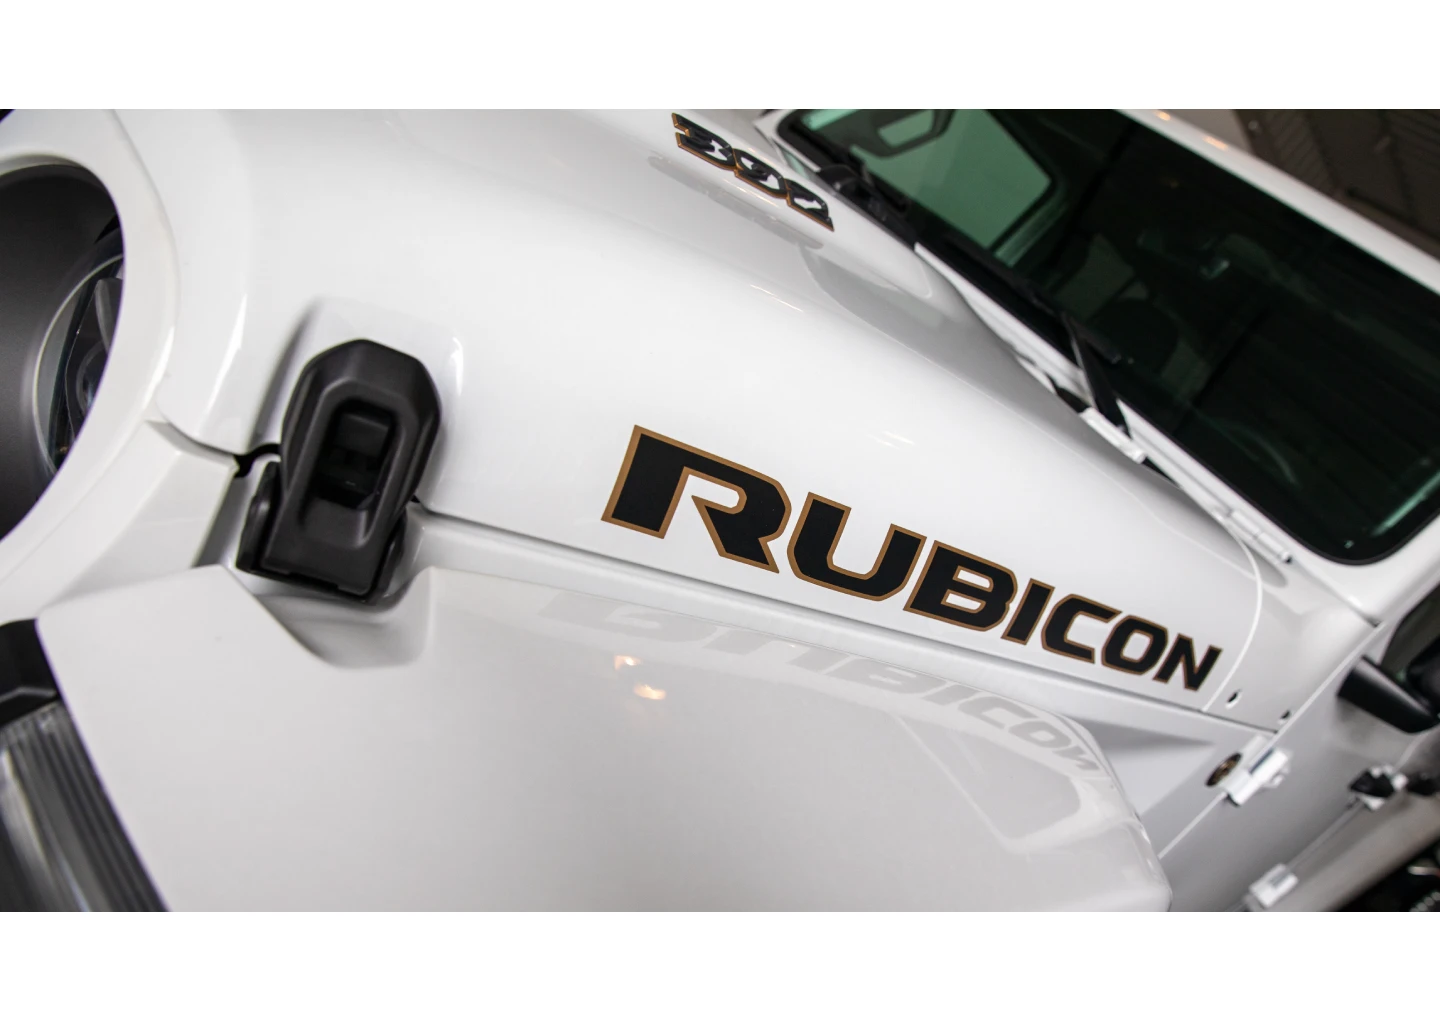 jeep rubicon rental brand view